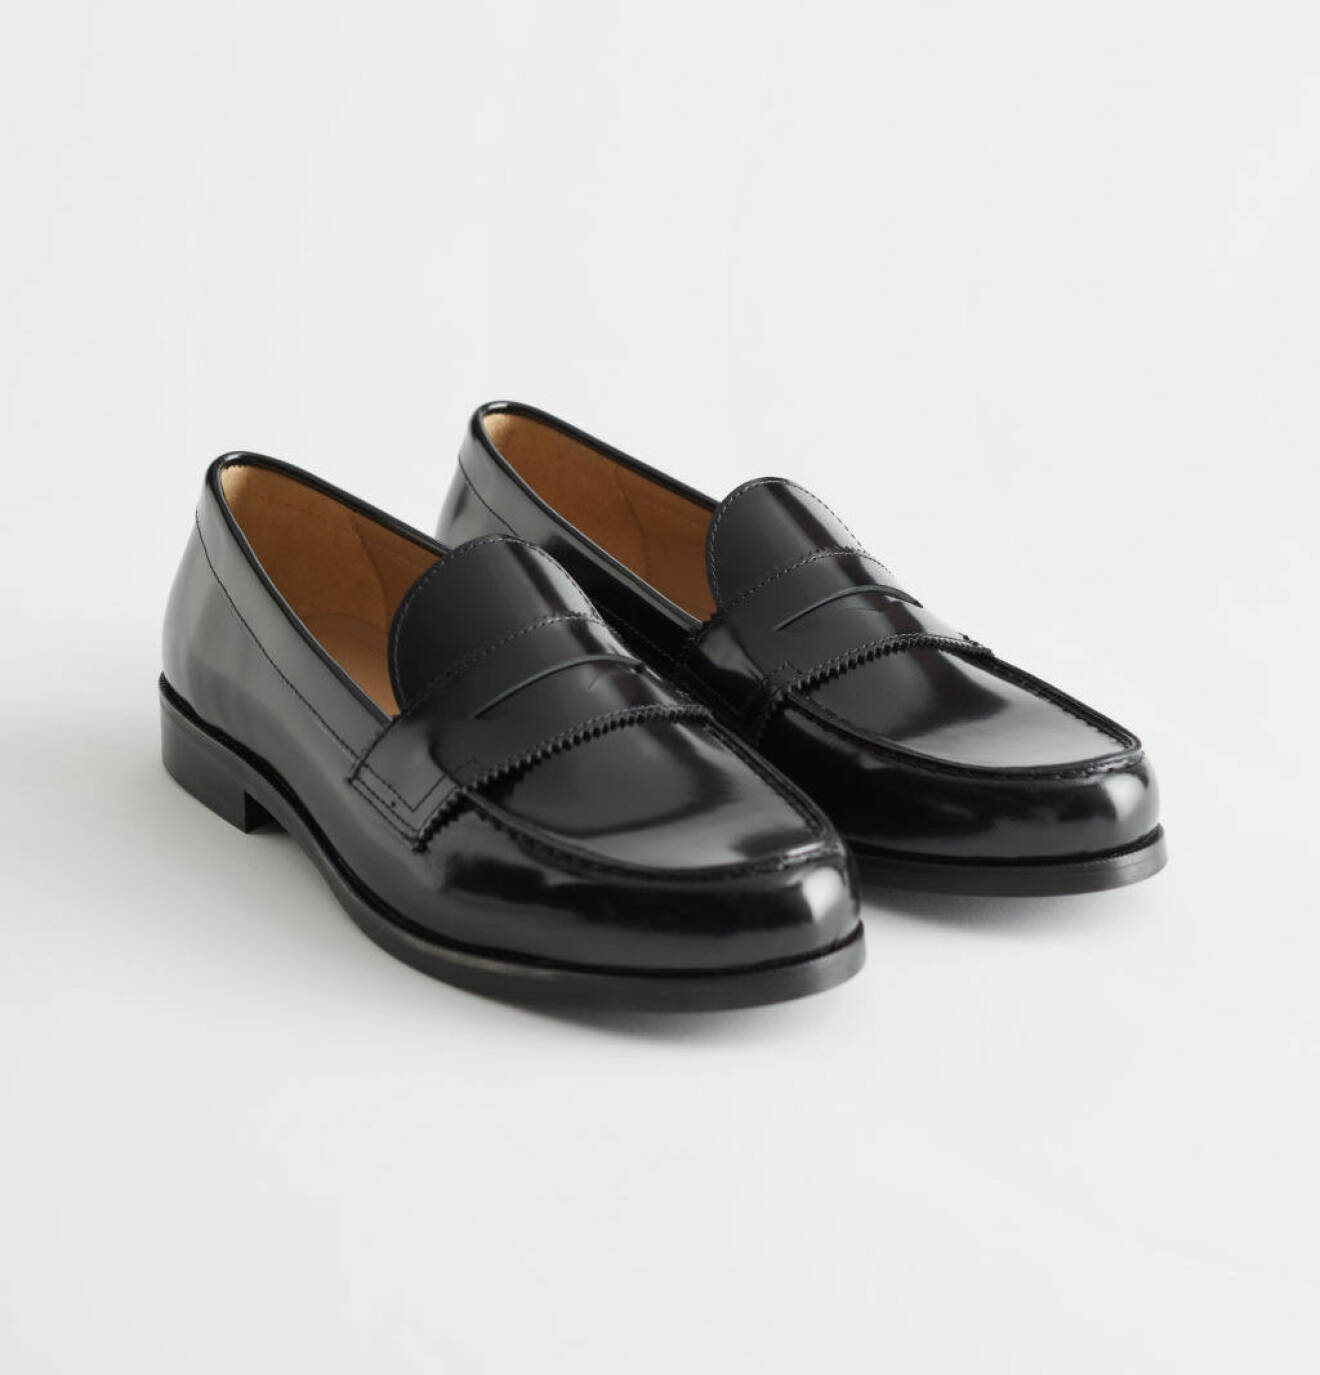 Klassiska svarta penny loafers är en riktigt användbar skomodell.